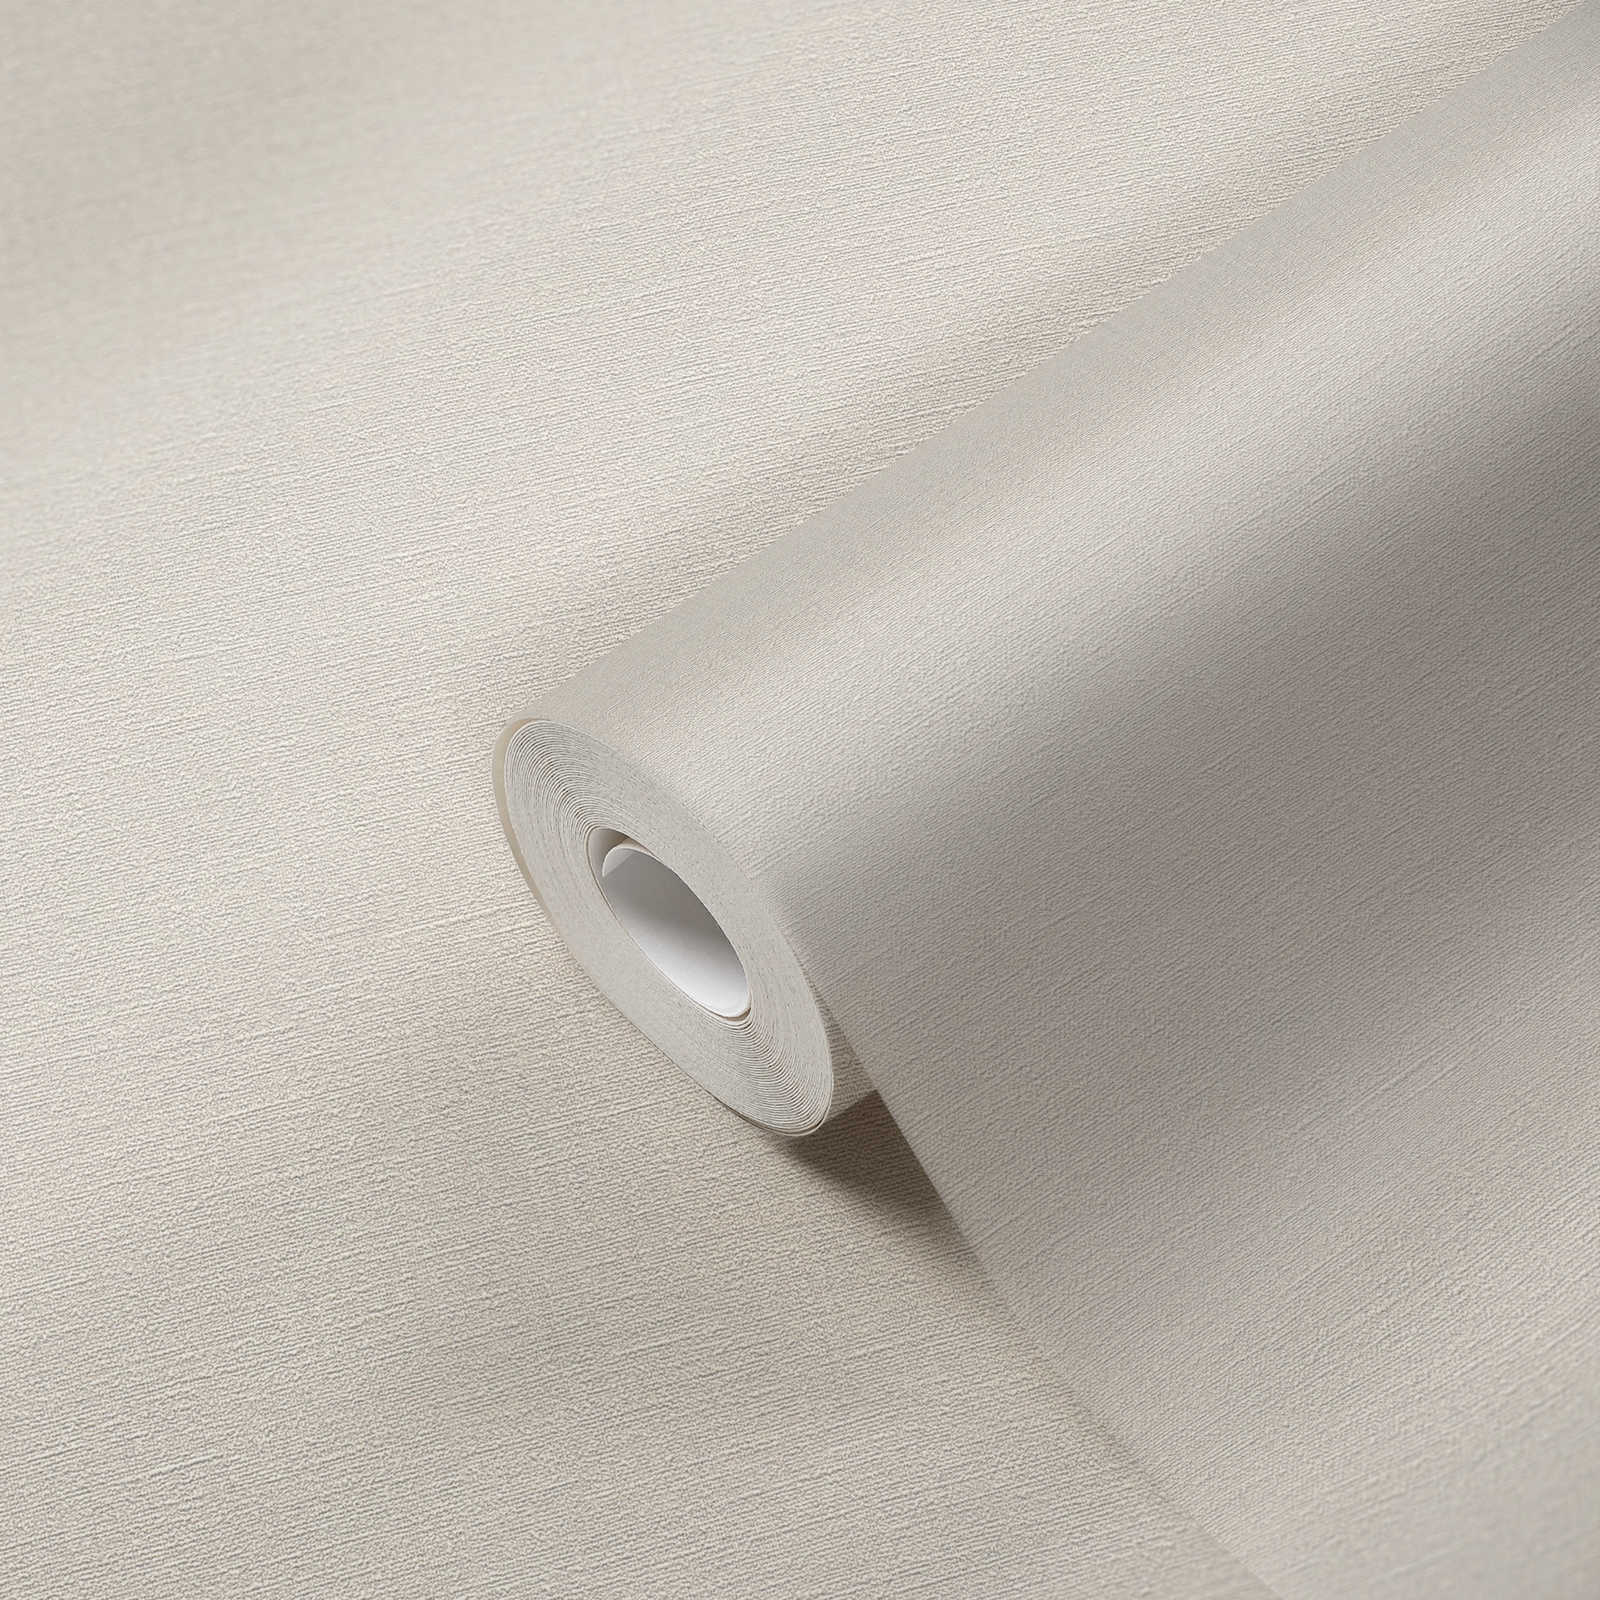             Papier peint gris-blanc uni & mat avec motifs structurés
        